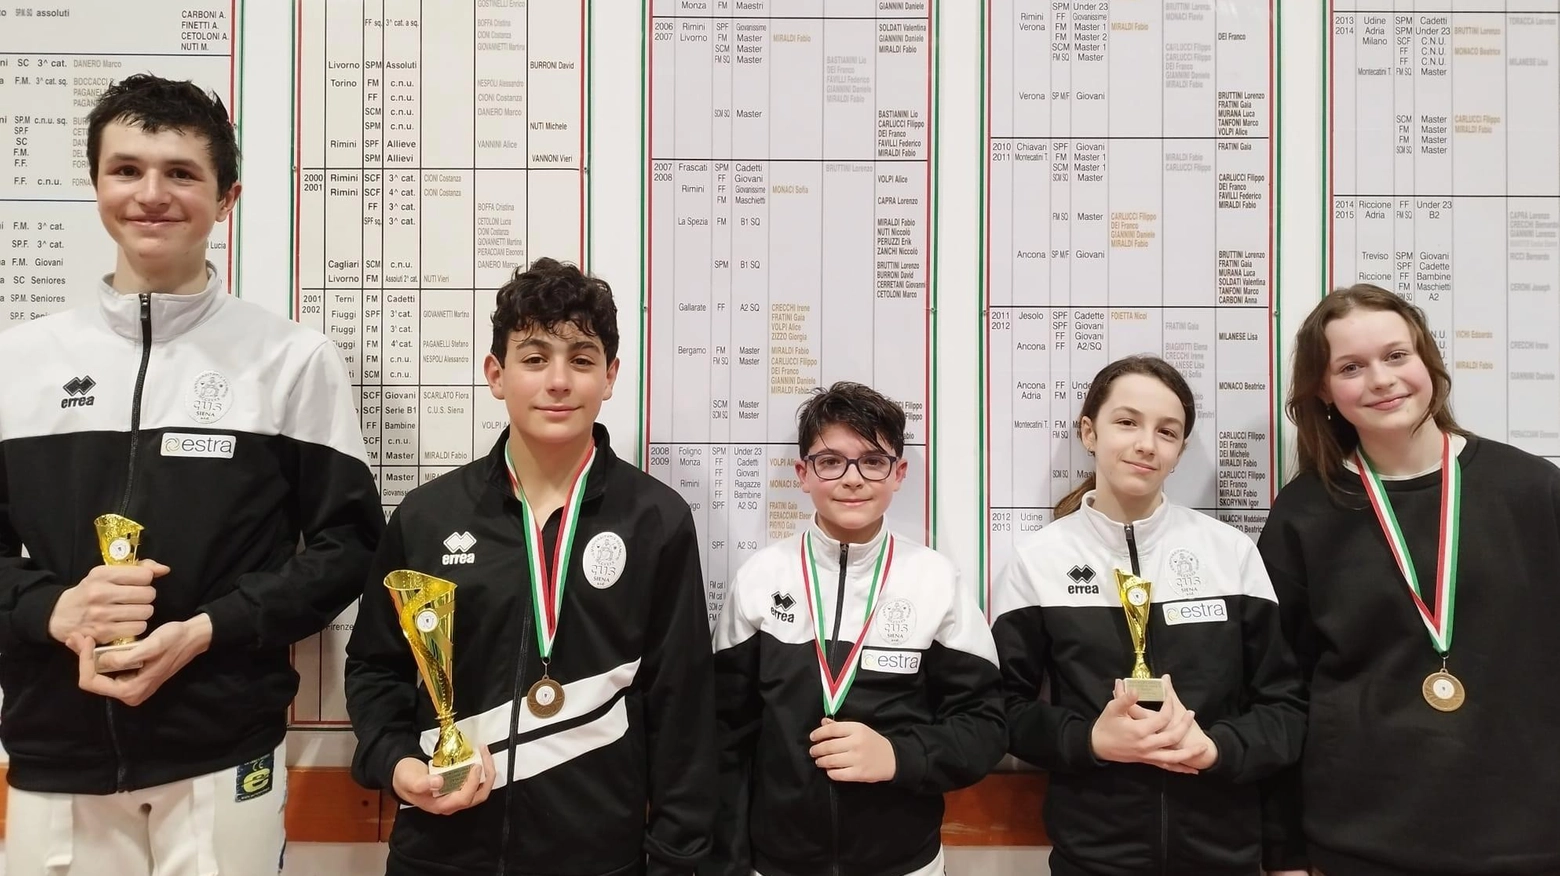 Importanti risultati centrati dagli atleti cussini Under 14. Sofia Pichierri e Tommaso Russo portano a casa il bronzo